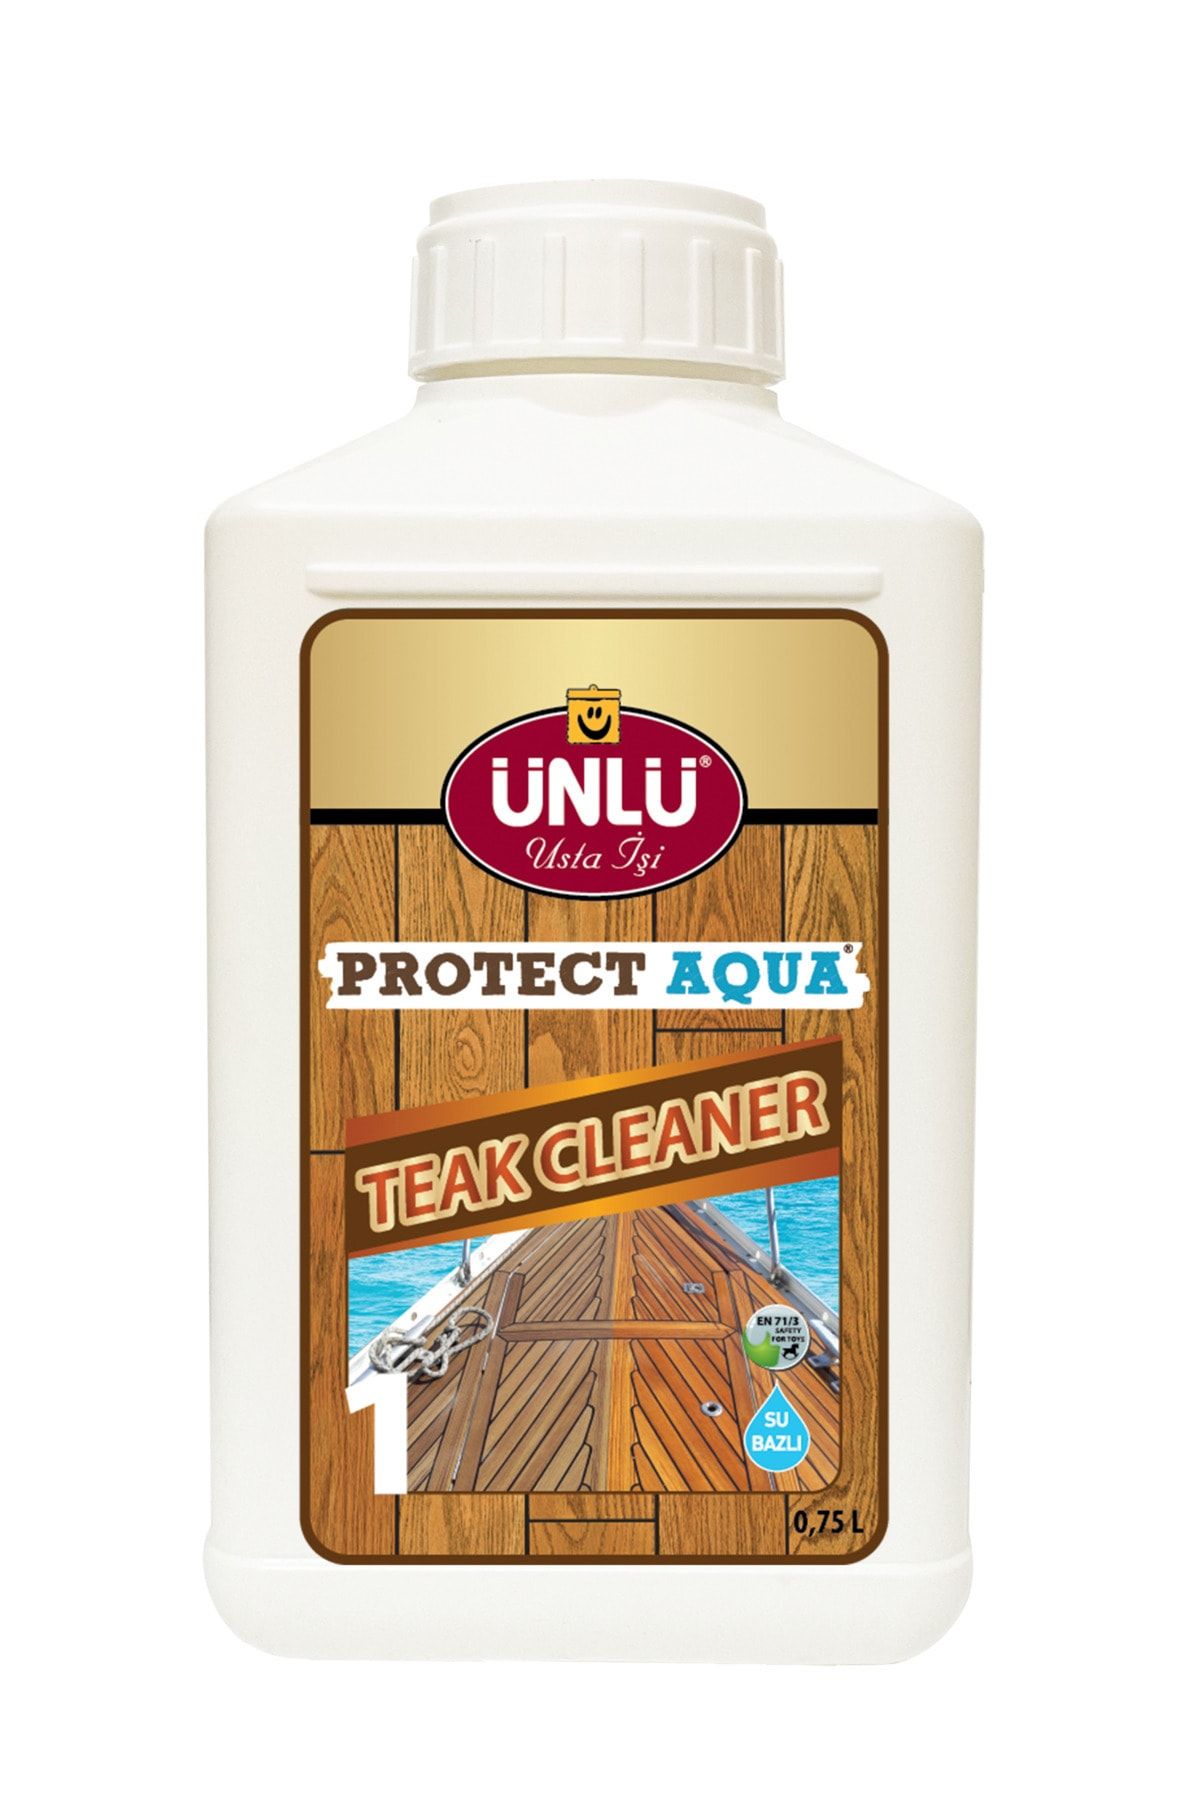 Ünlü Boya Ünlü Protect Aqua Su Bazlı Teak Cleaner (1. Adım) 0,75L